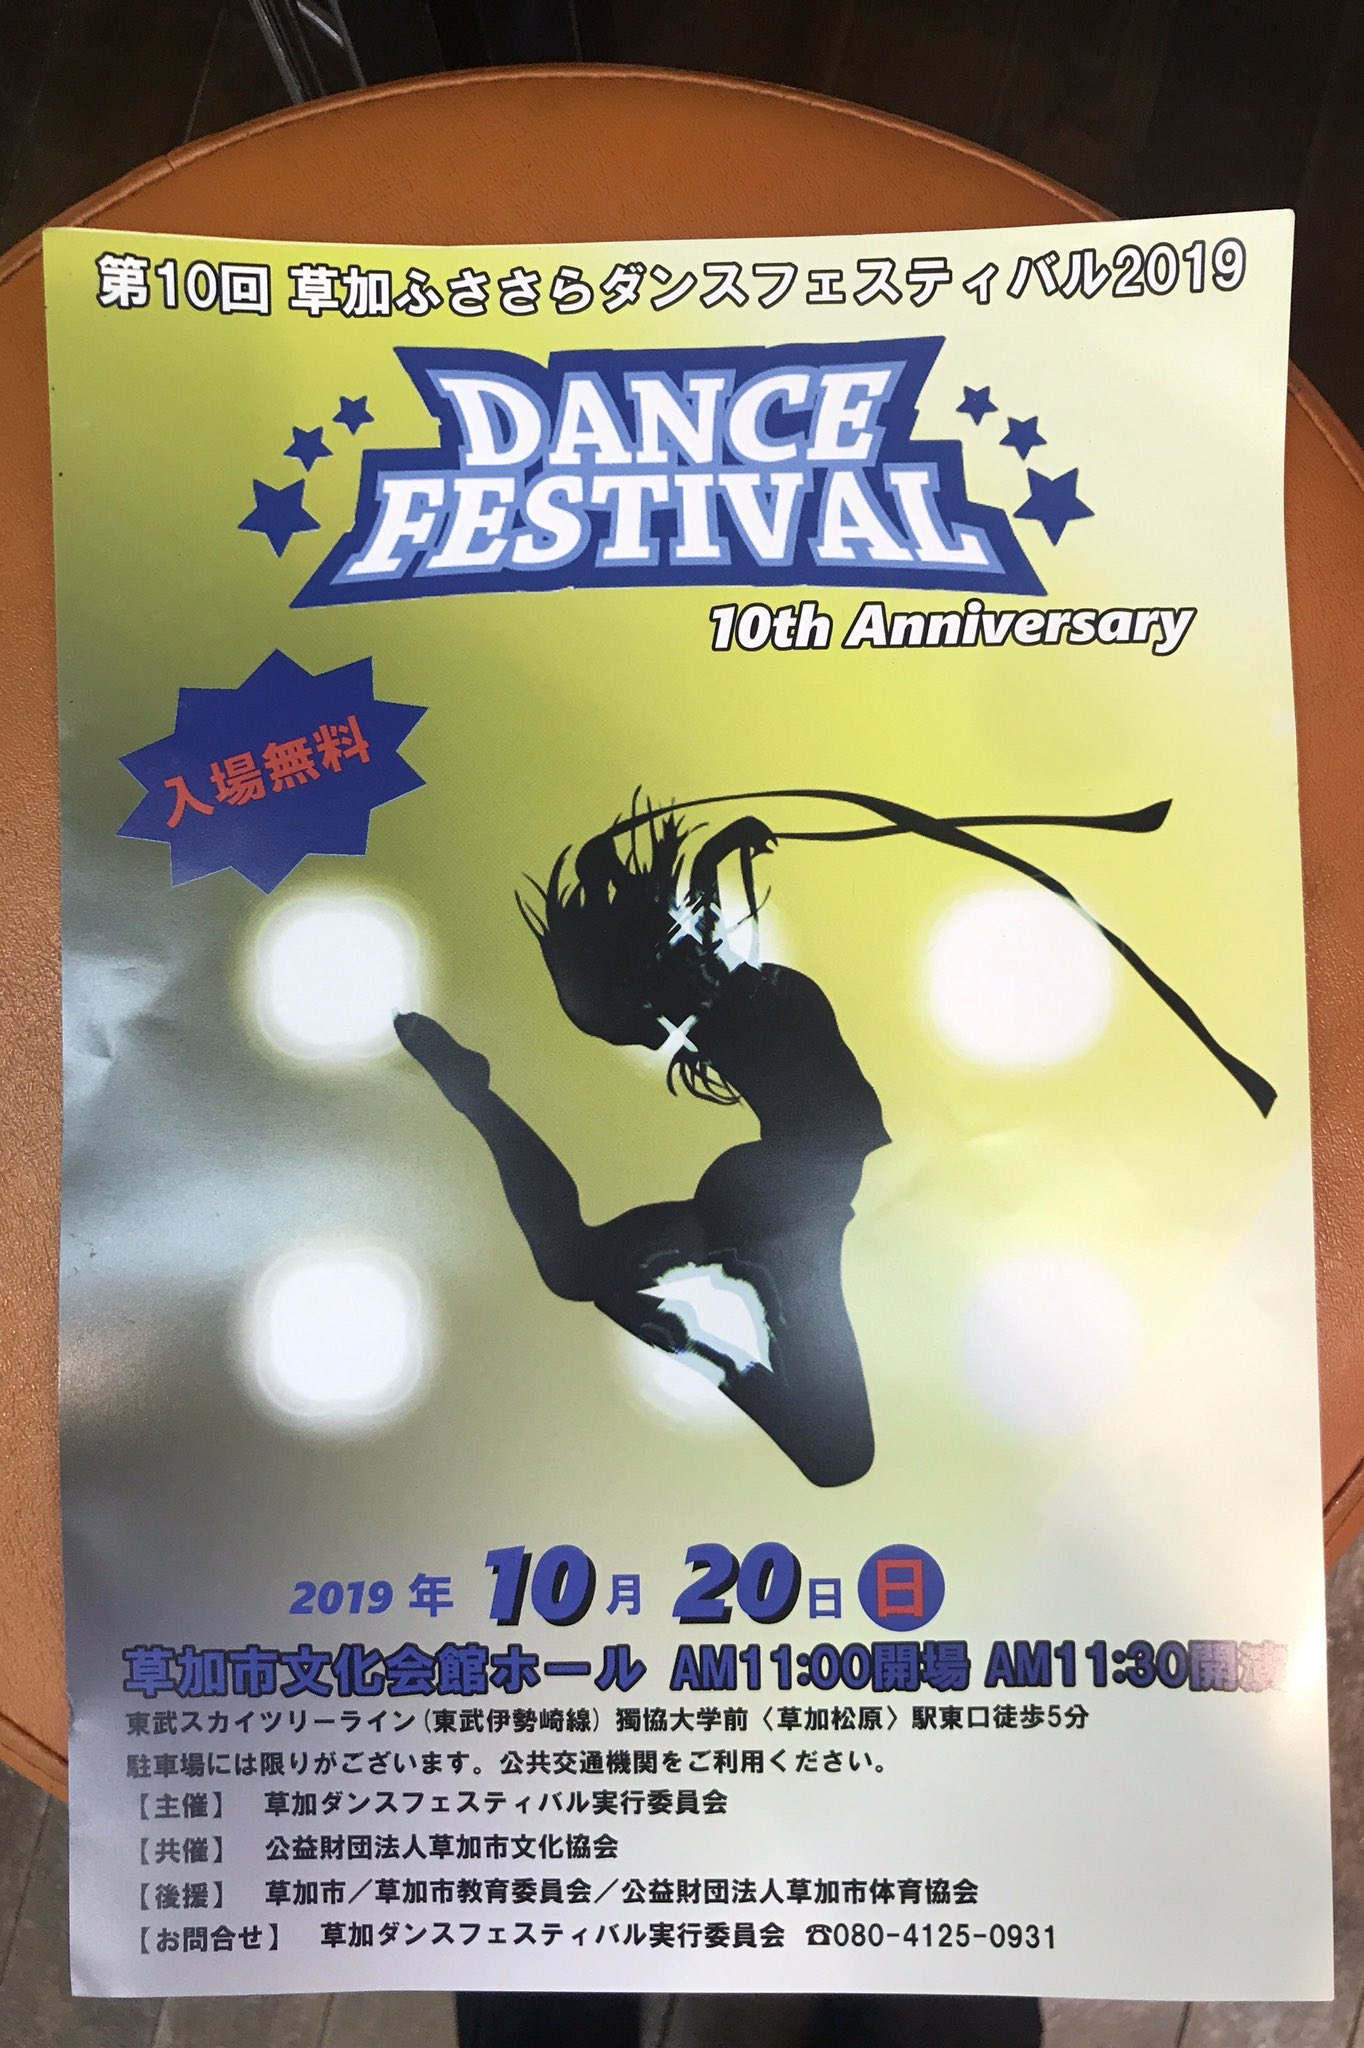 Hasamiimasamii 在 Twitter 上 草加ふささらダンスフェスティバル 今年は第10回 なんと4曲踊ります メインの50番 チーム名はダサカッコイイと評判の ゴージャズ よさこいチーム 大姫晩星 で2曲 10周年企画でスリラー踊りましゅ 入場無料 ぜひキテネ ぽぅ